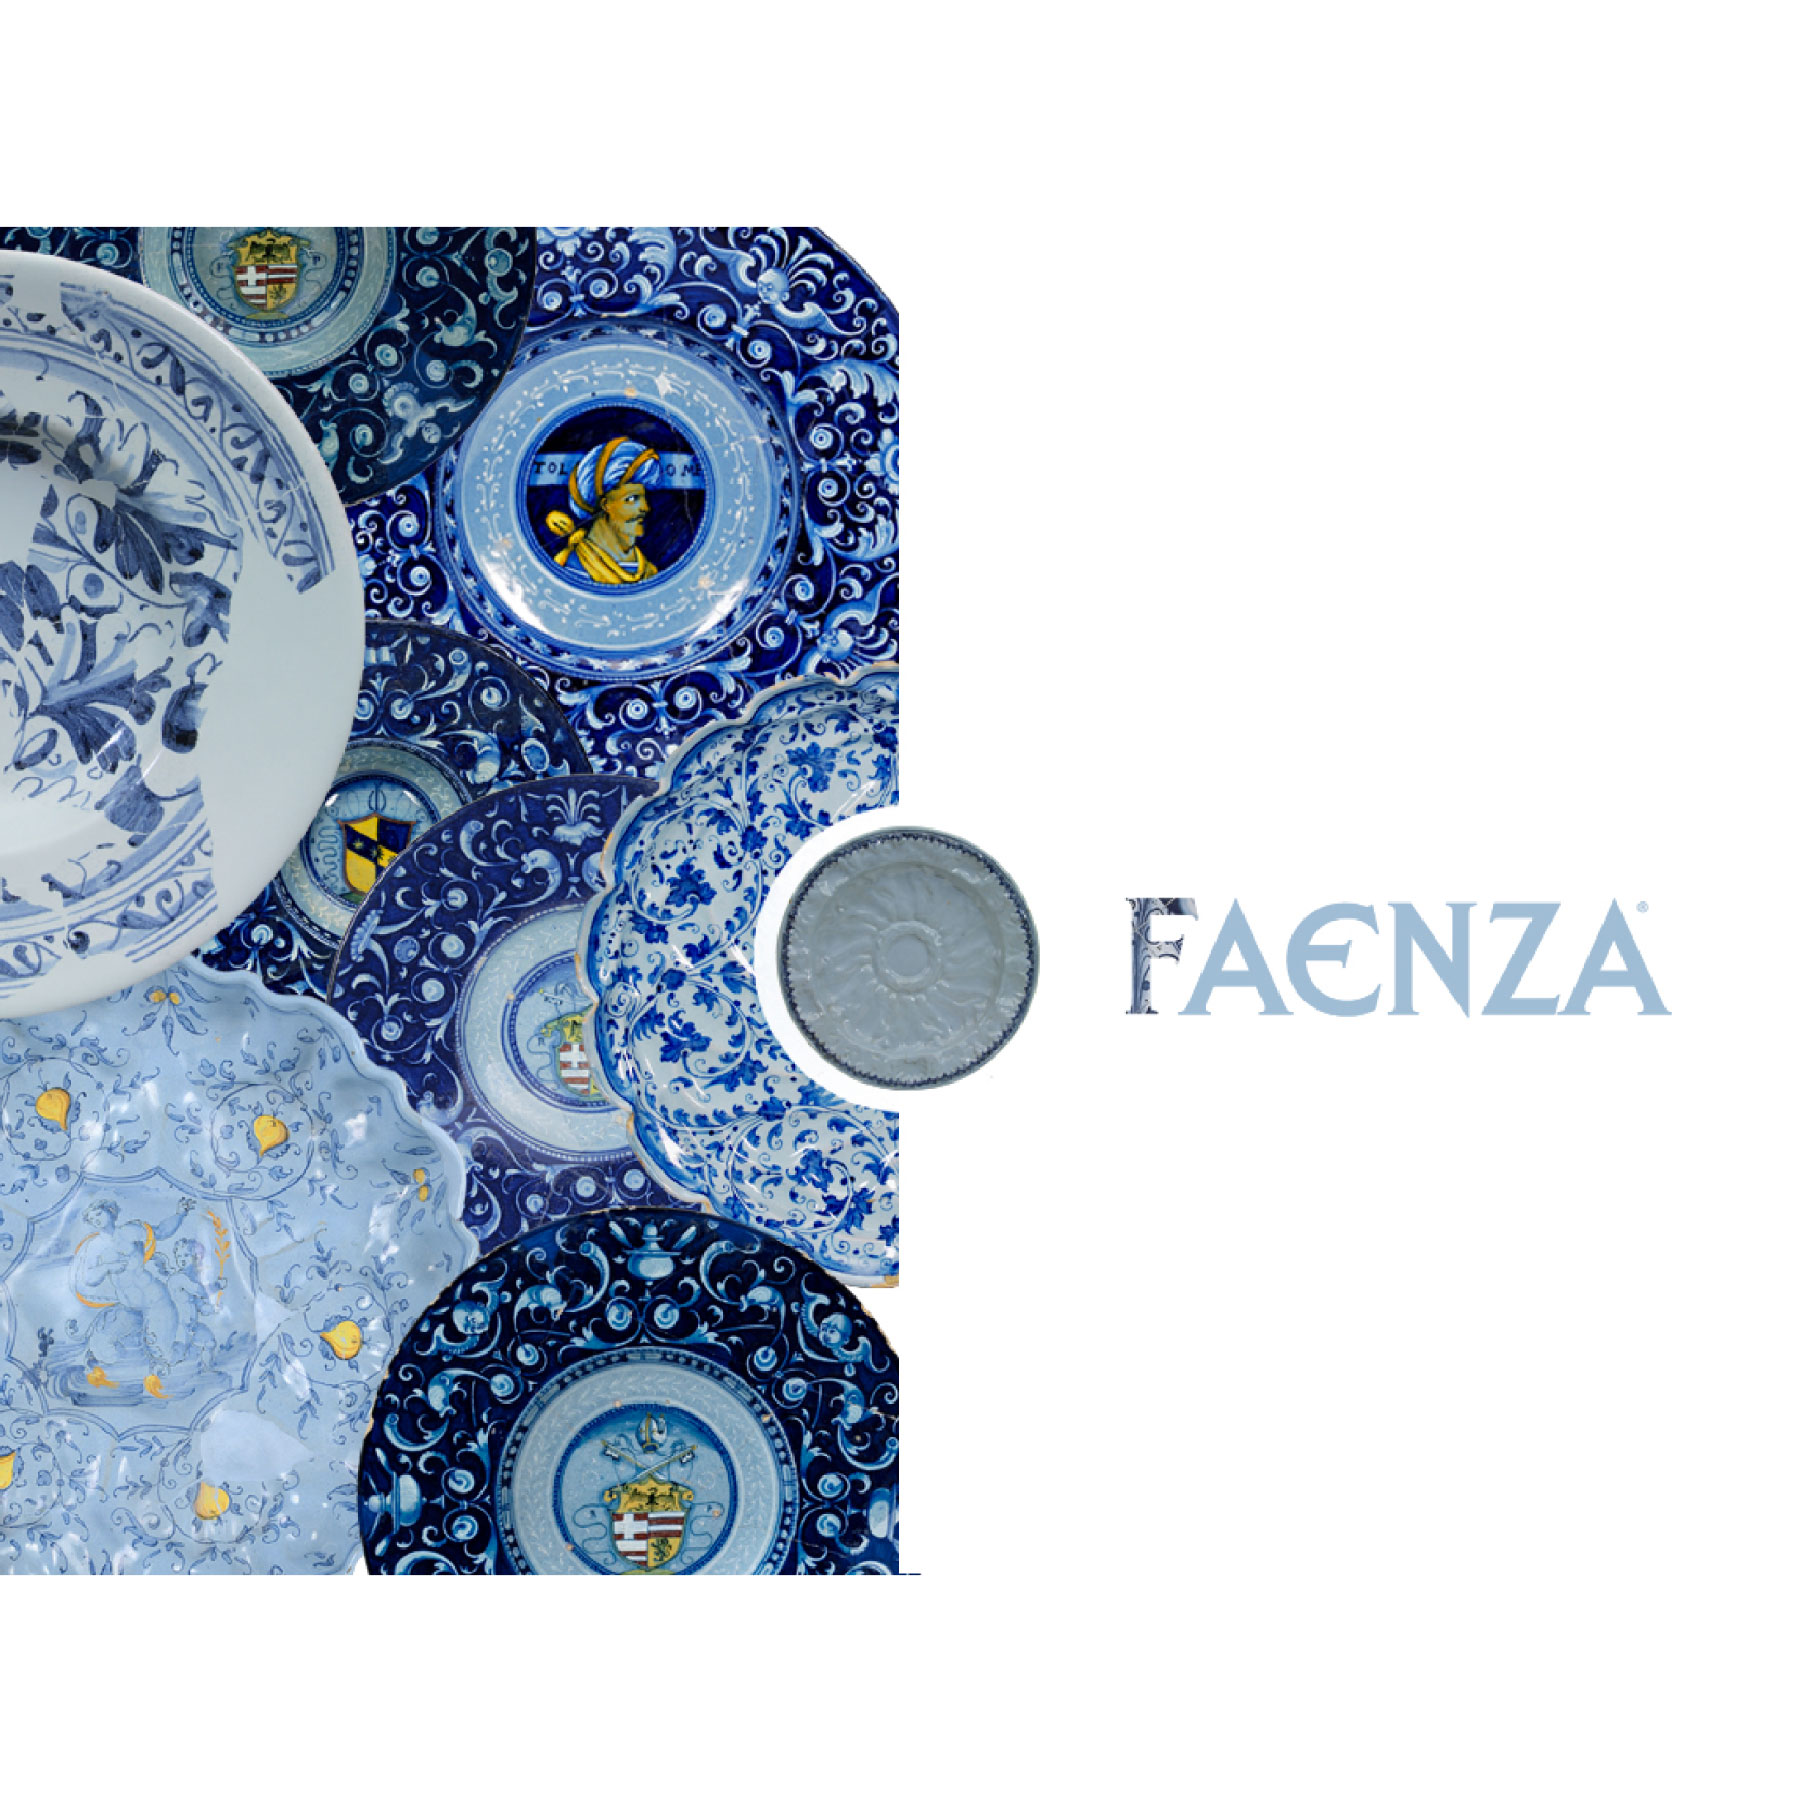 Design - Faenza-Ceramica - Gallery Pantieri Design